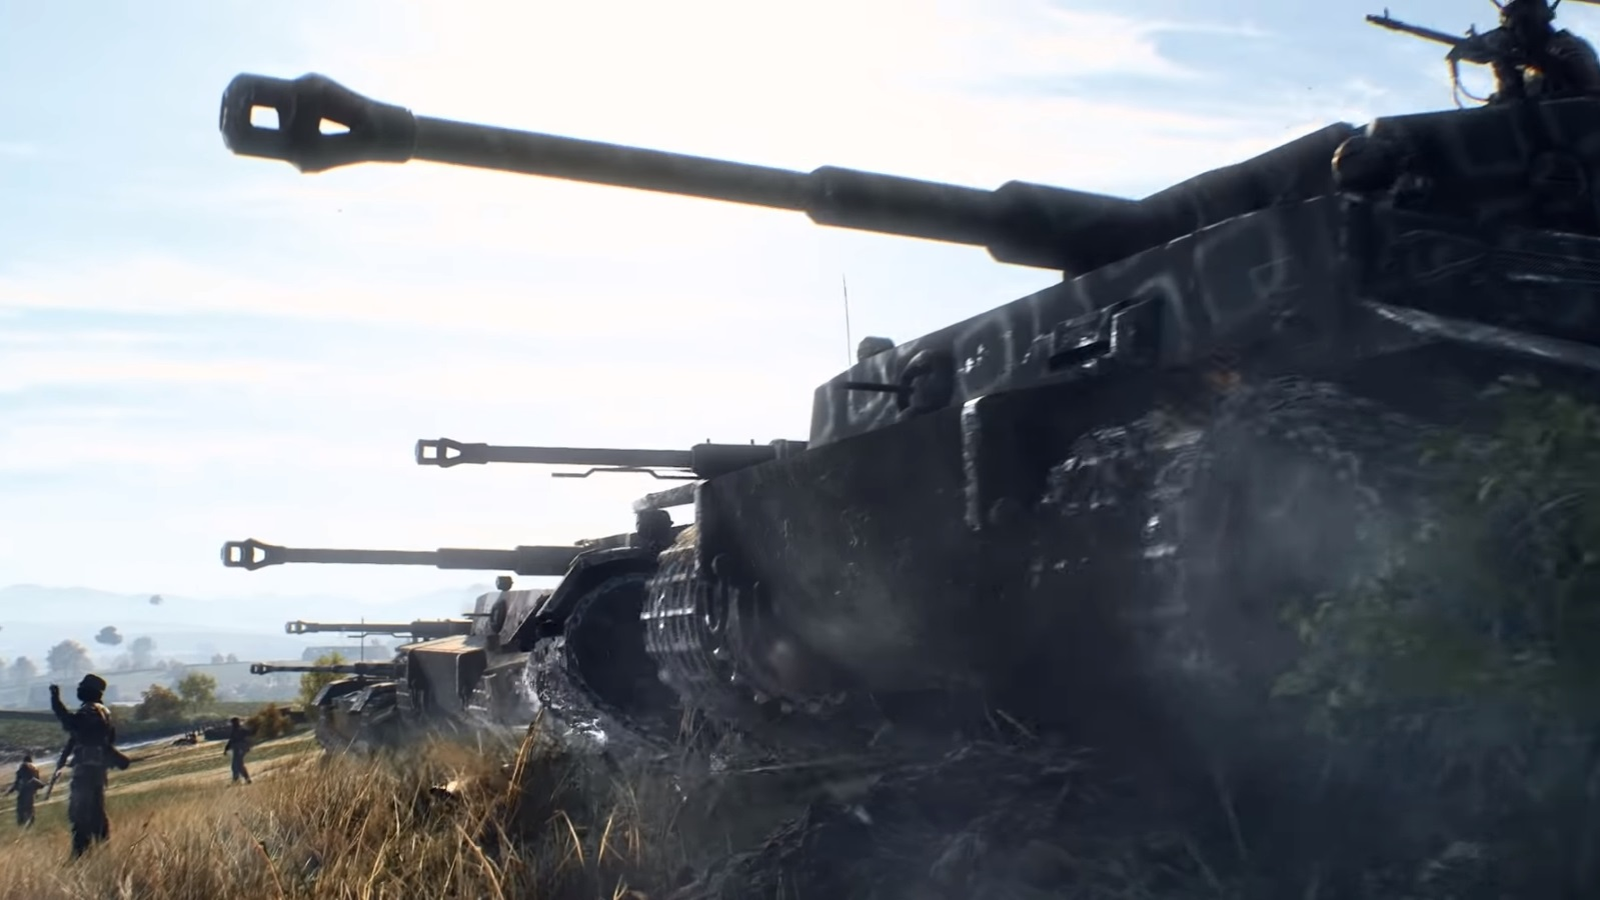 bfv #bf5 #battlefield #battlefield5 #gaming #bfvclips #tanks #ps5